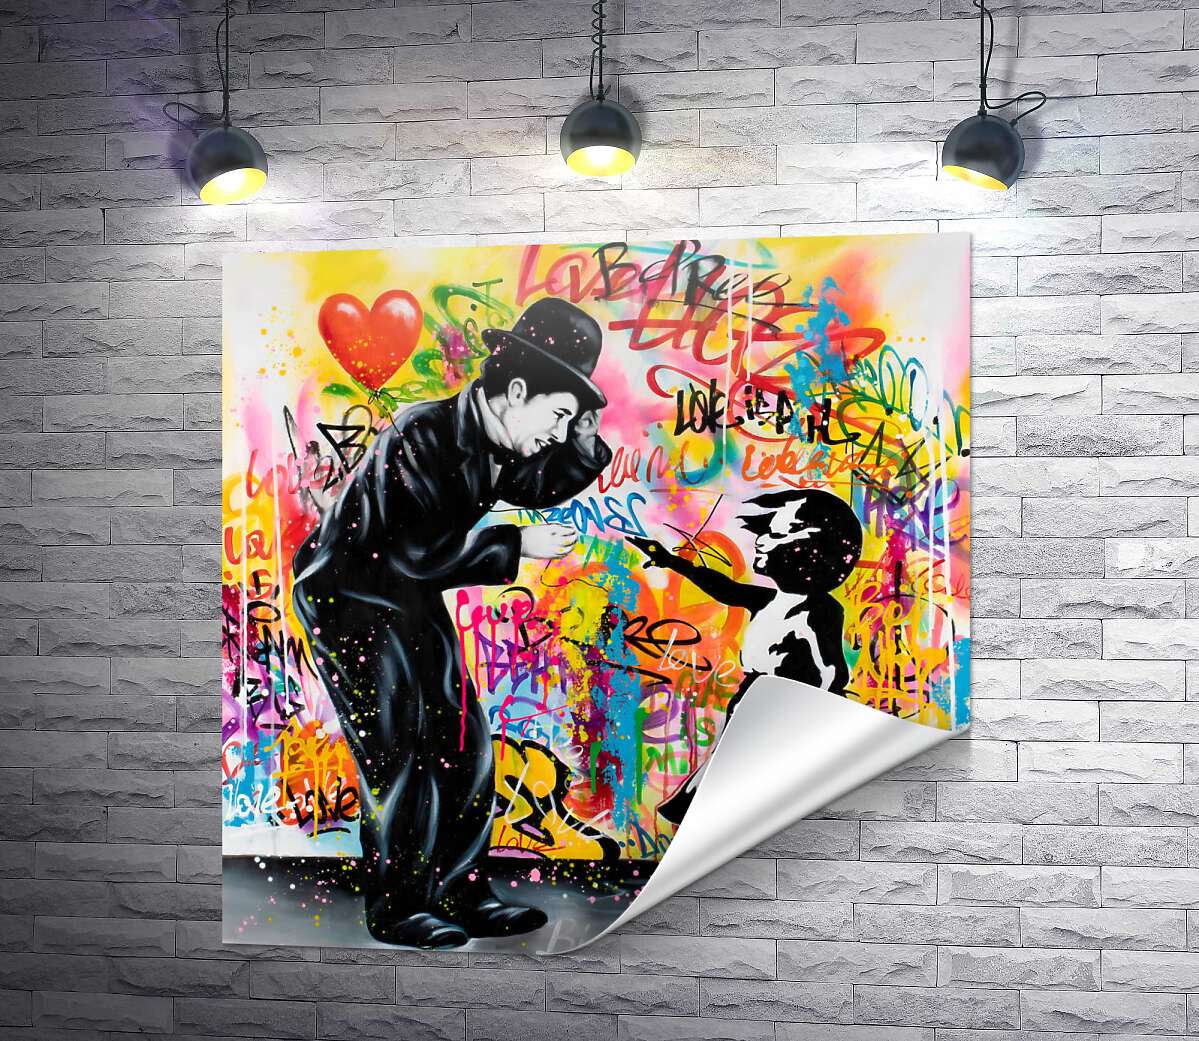 друк Арт графіті Чарлі Чапліна з дівчинкою в стилі Бенксі